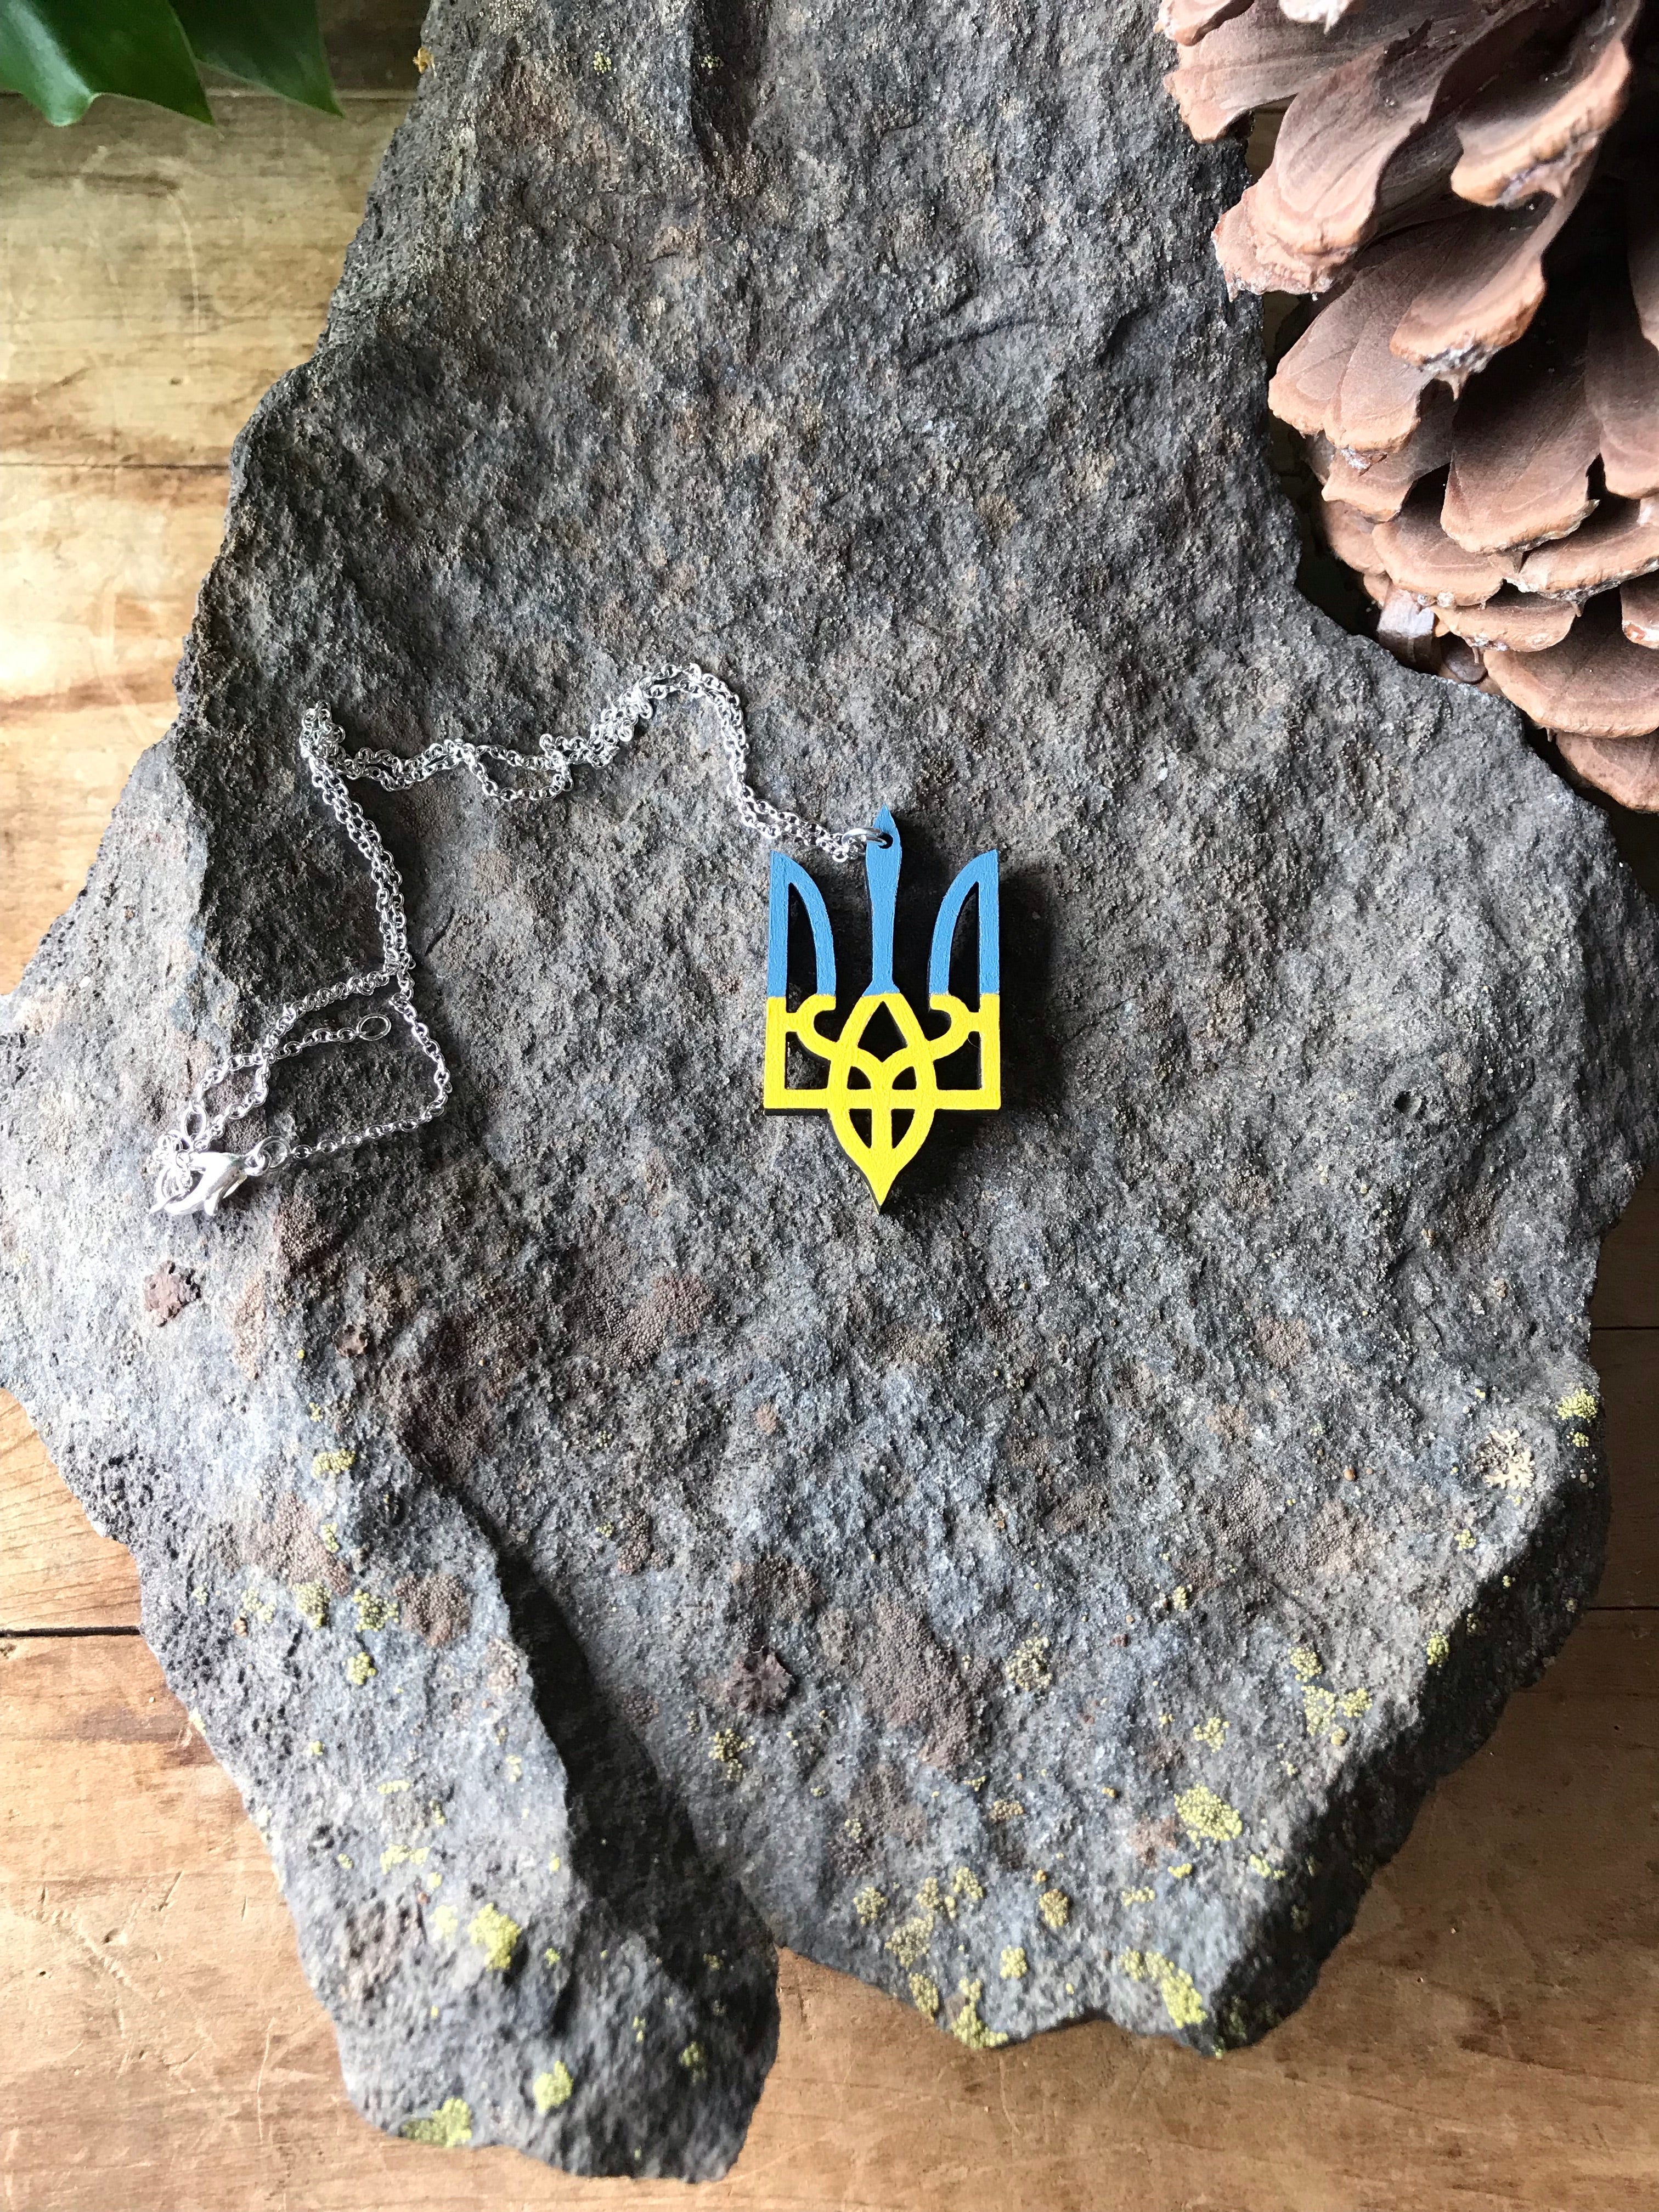 Bestseller - Support Ukraine Trident Necklace